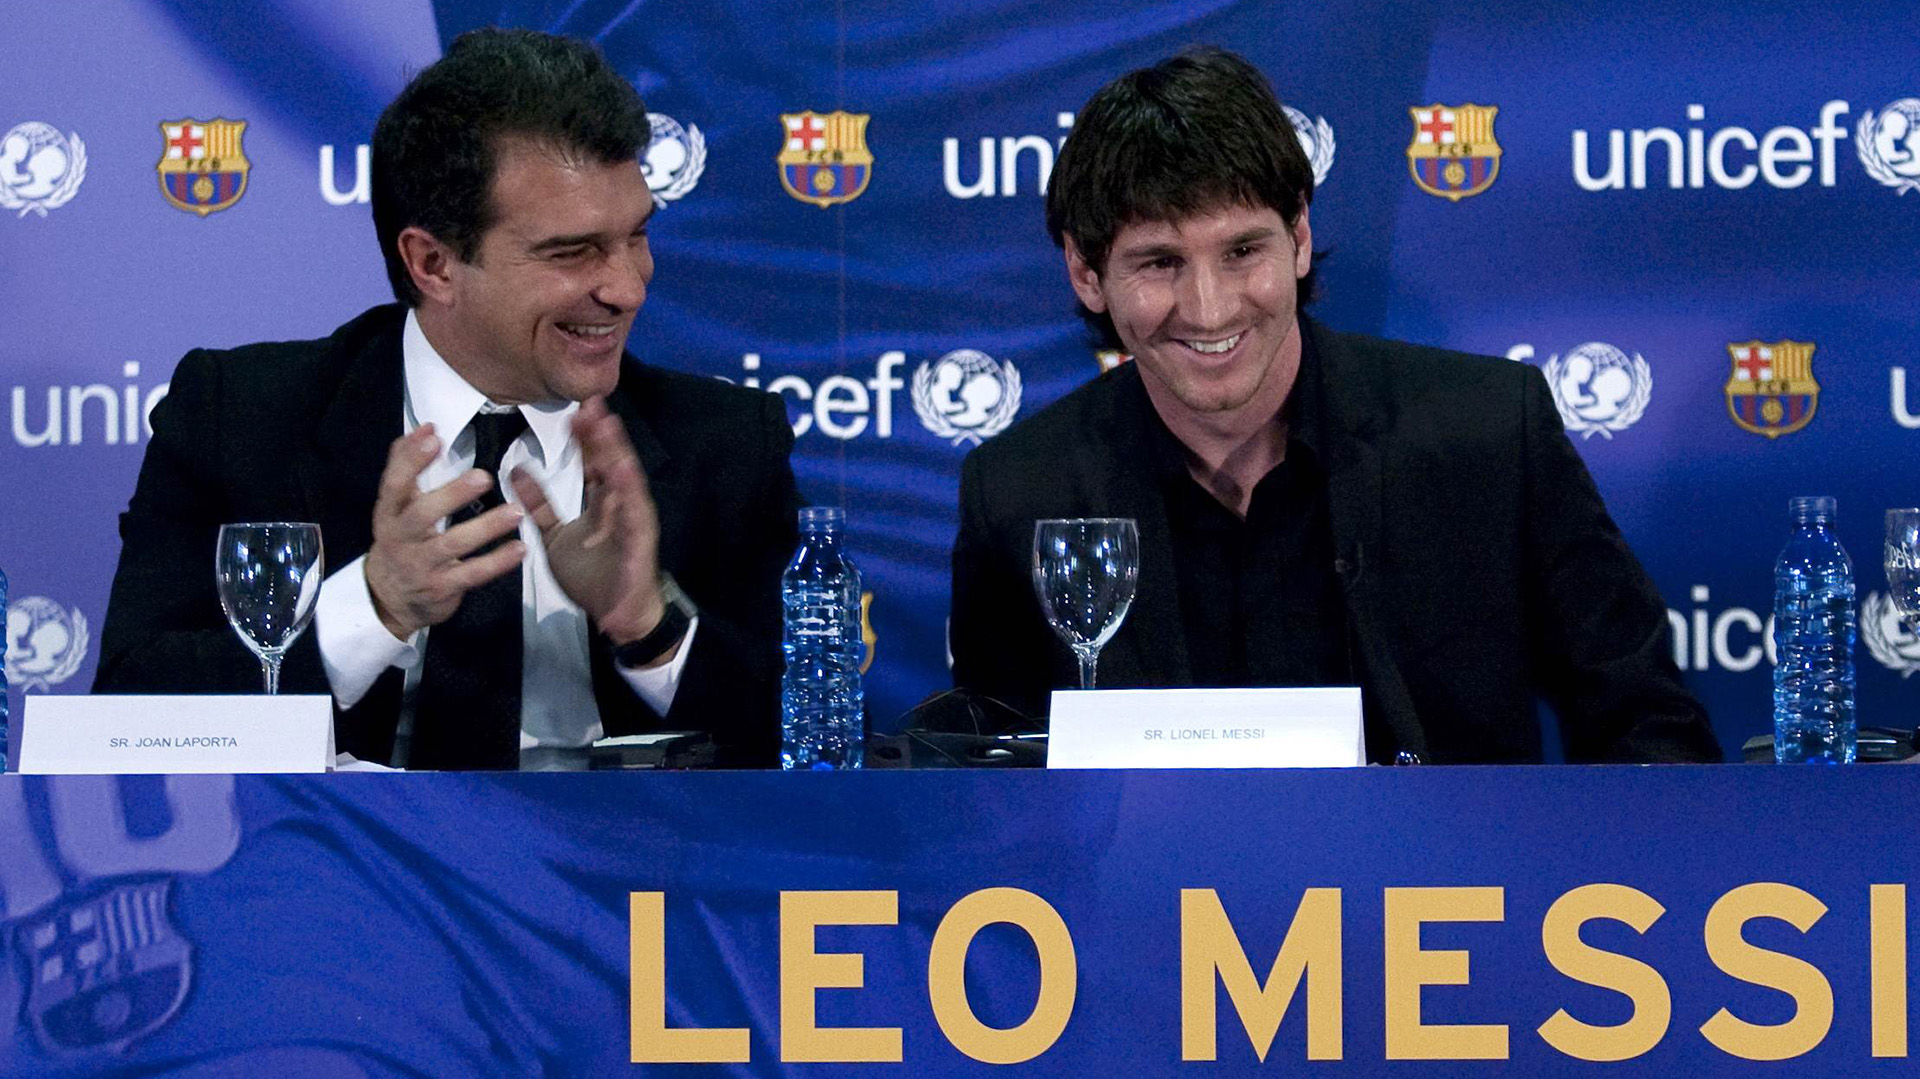 Sonrisas entre Joan Laporta y Leo Messi en una conferencia de prensa en 2006 (AFP PHOTO / JOSEP LAGO)